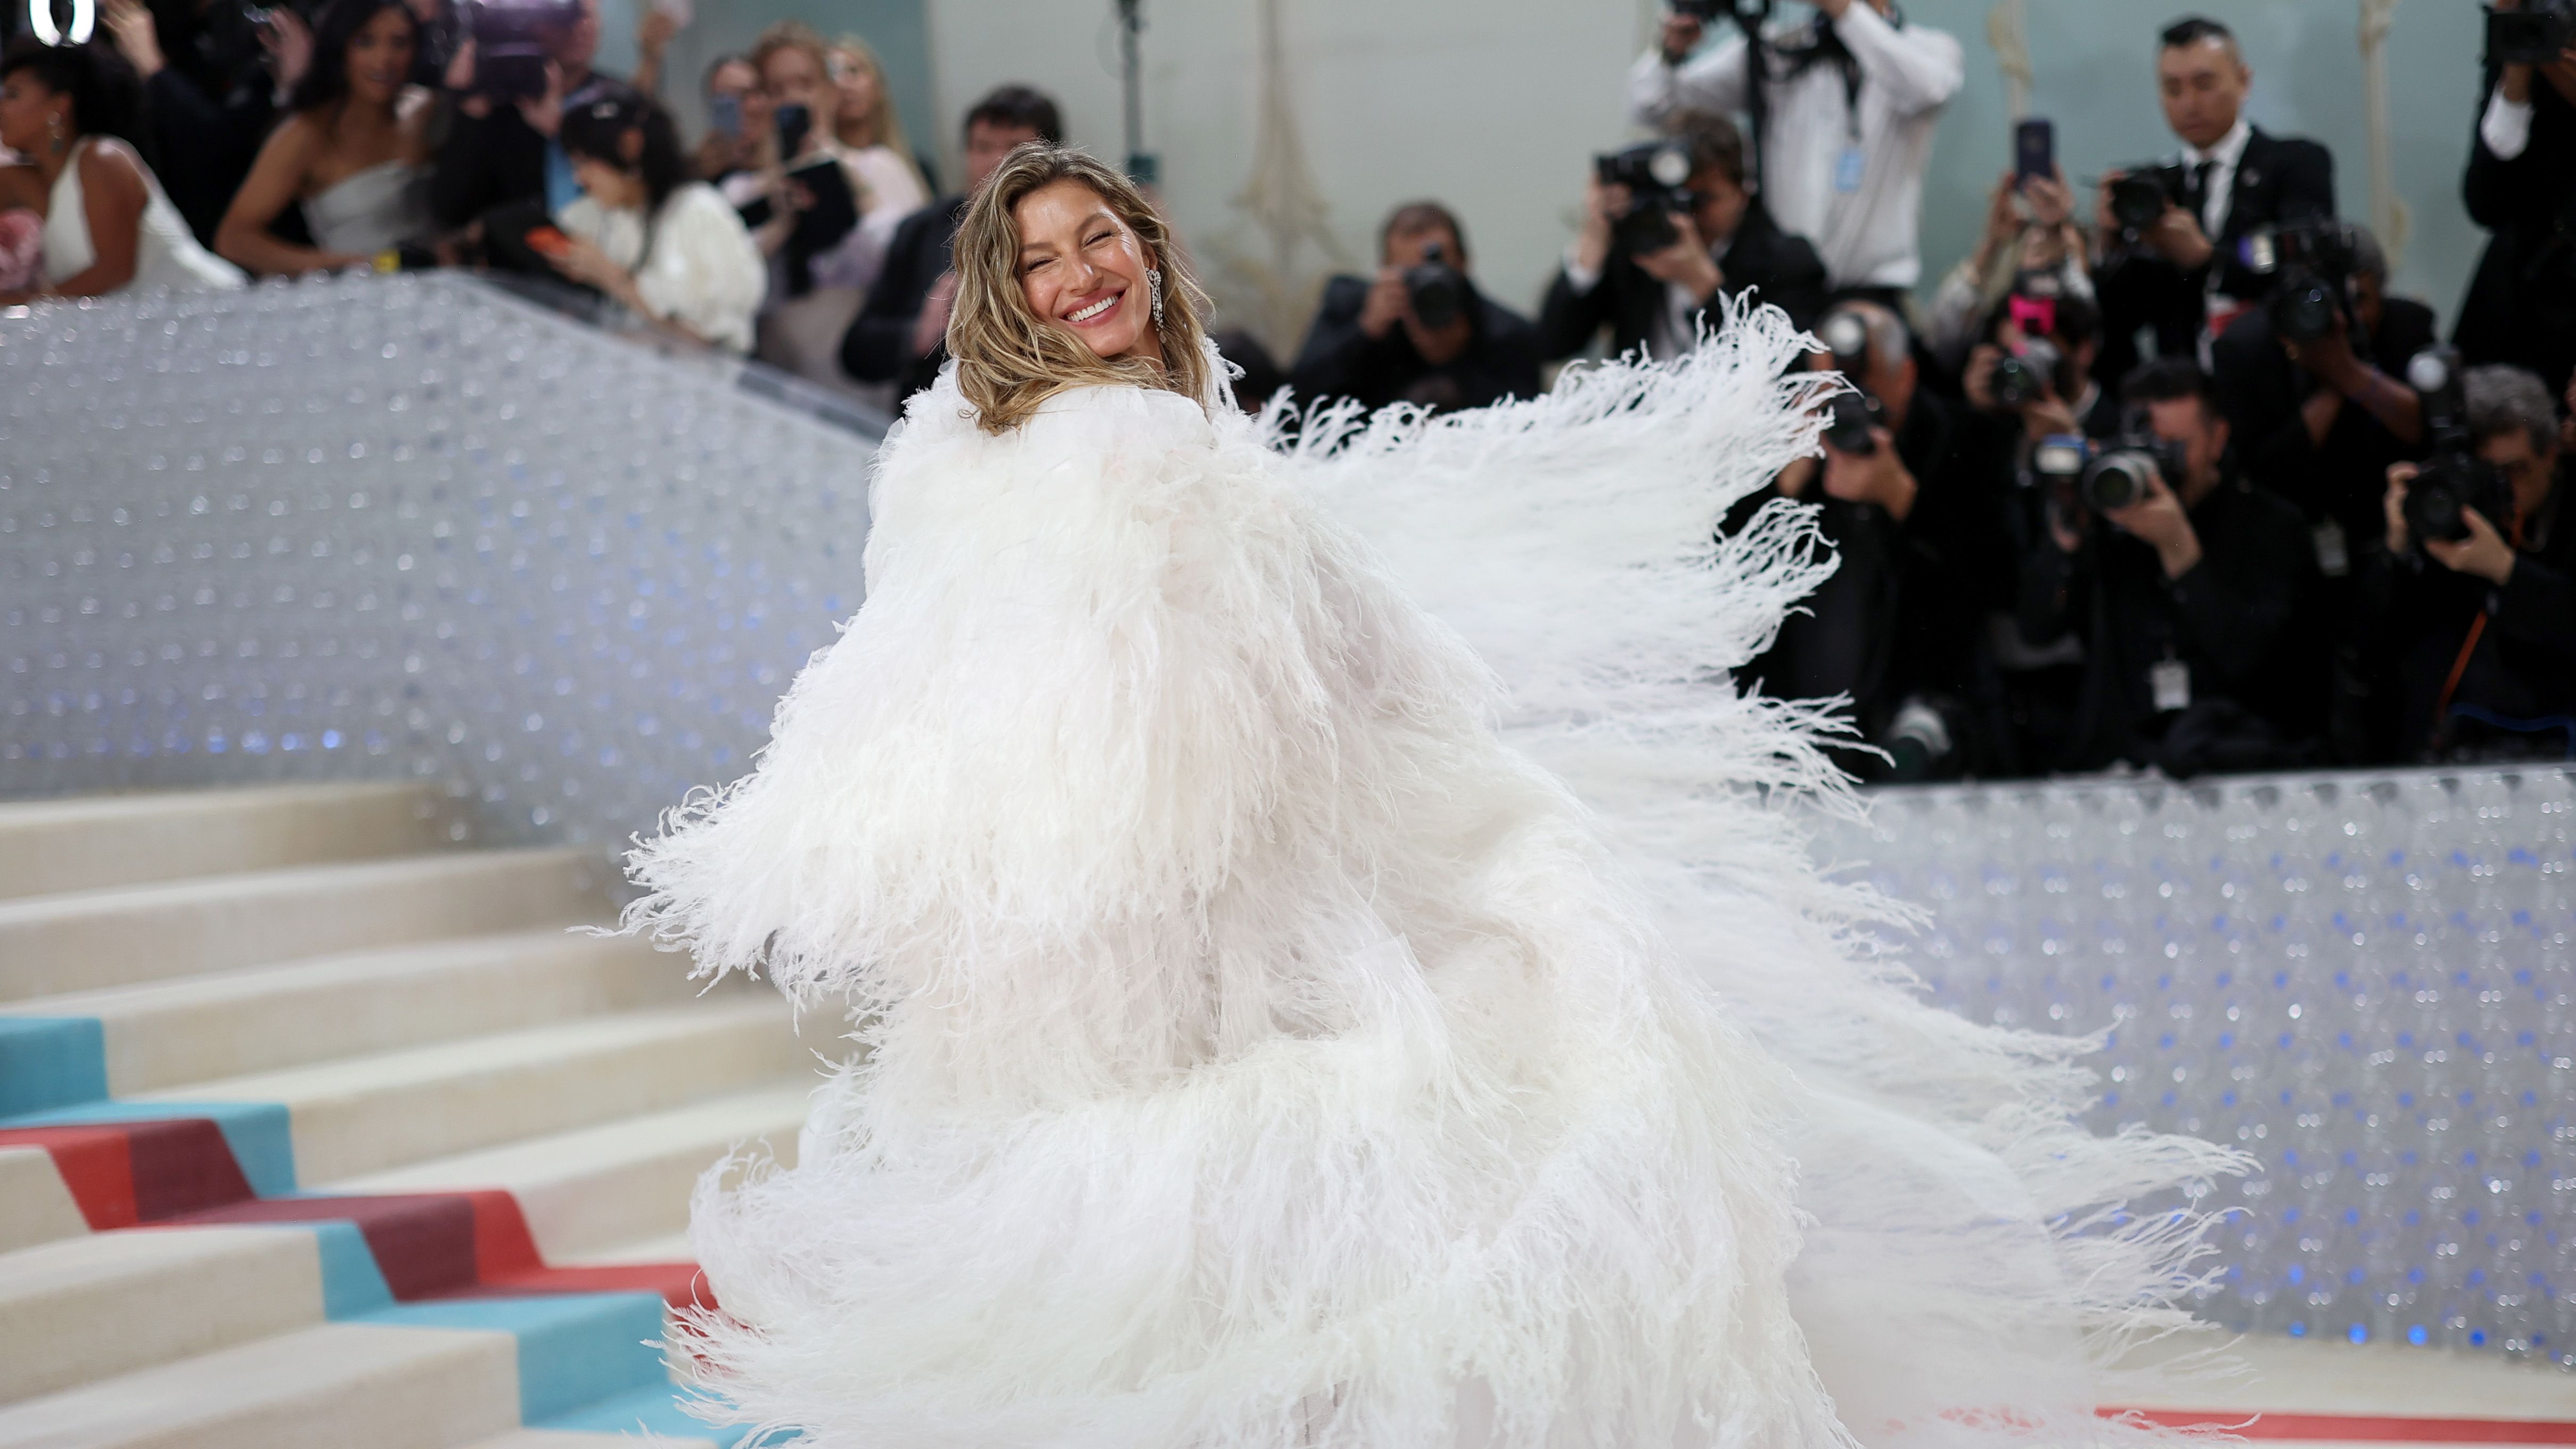 Gisele Bundchen Re-Wears White Chanel Dress on Met Gala Red Carpet